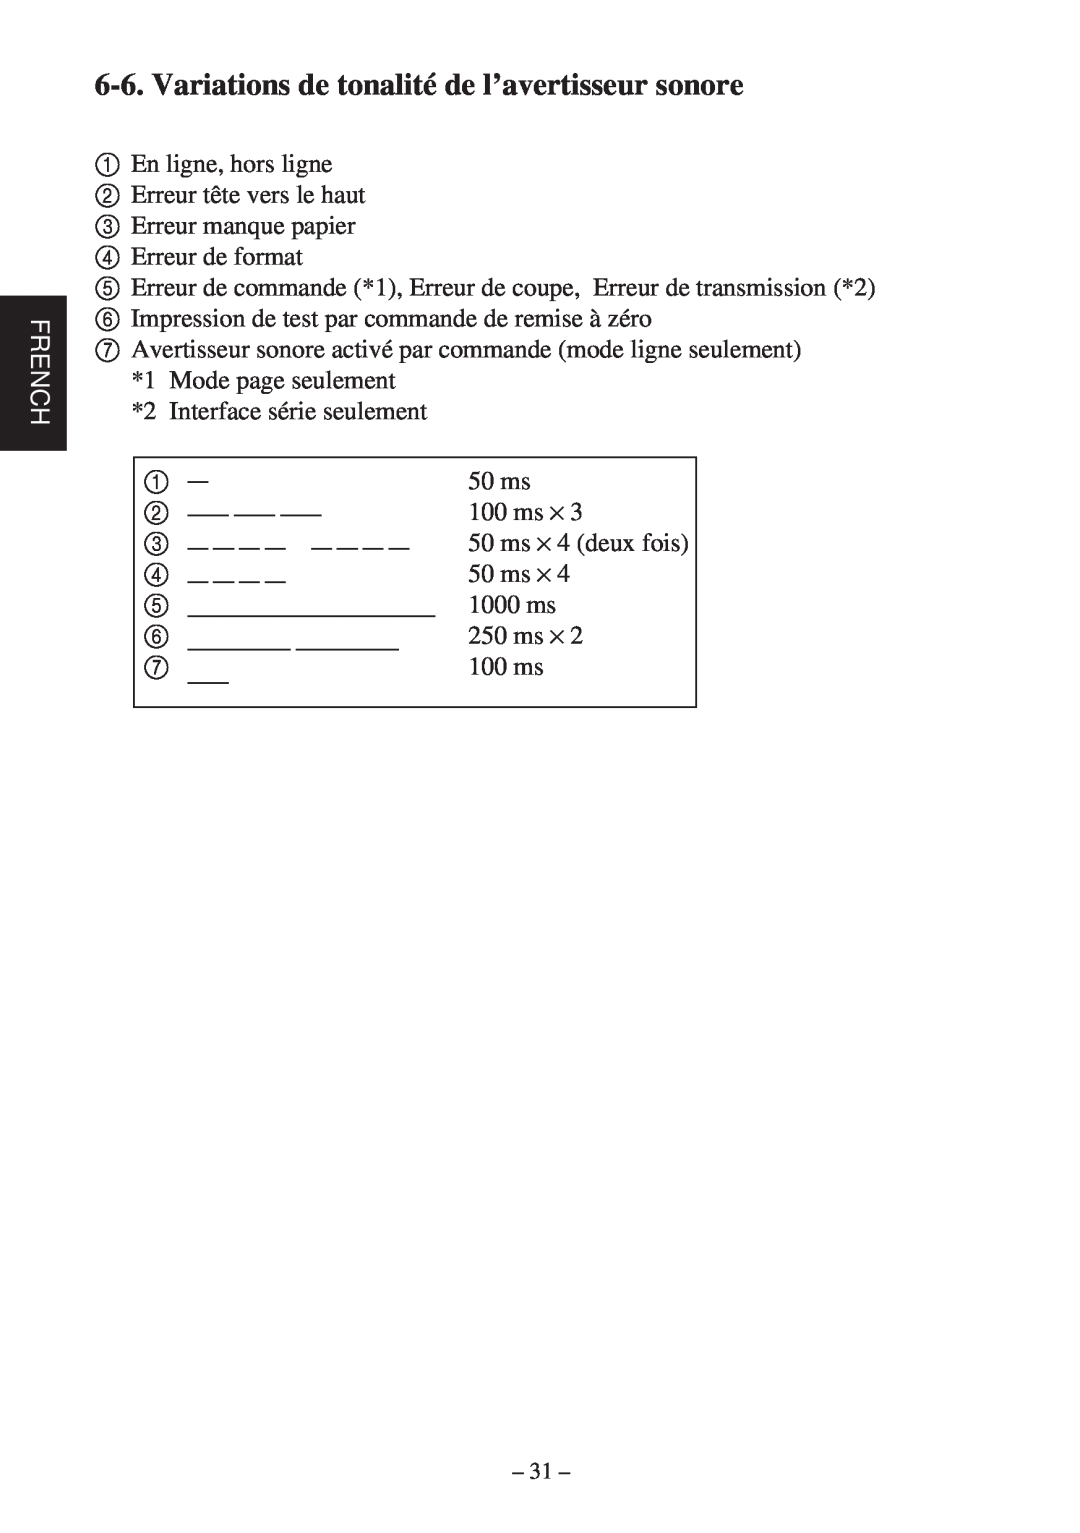 Star Micronics TSP400Z Series user manual Variations de tonalité de l’avertisseur sonore, French 